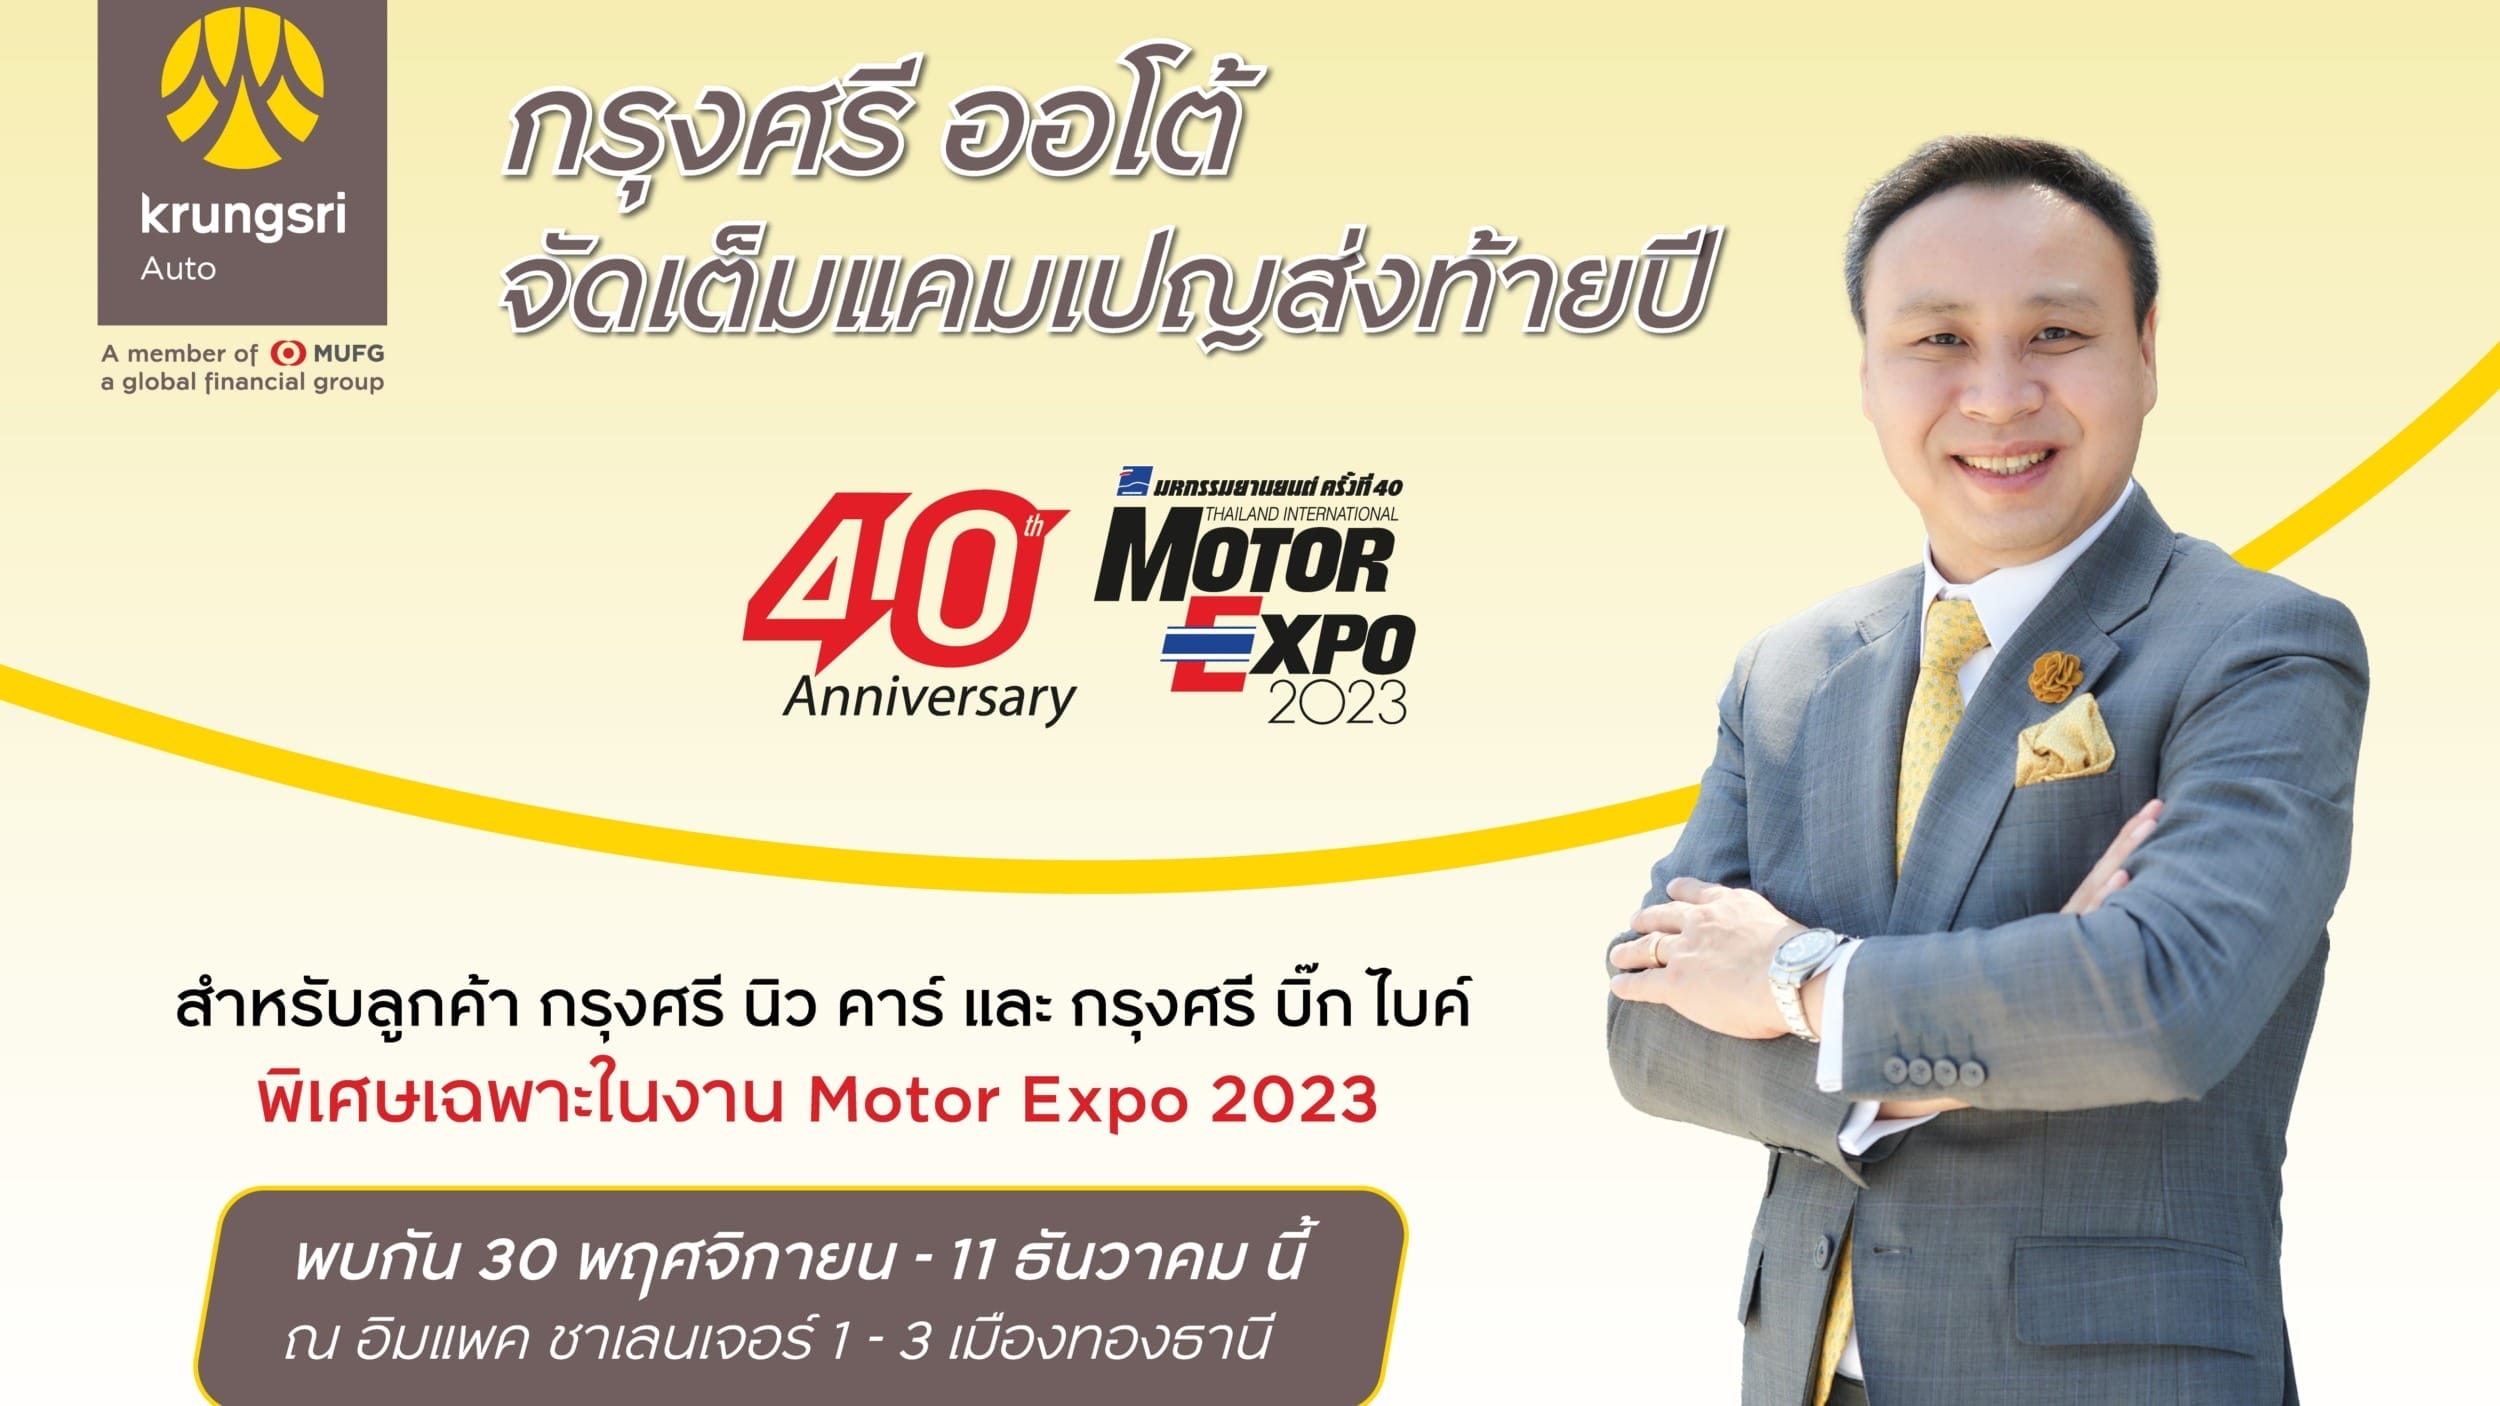 กรุงศรี ออโต้ Motor Expo 2023